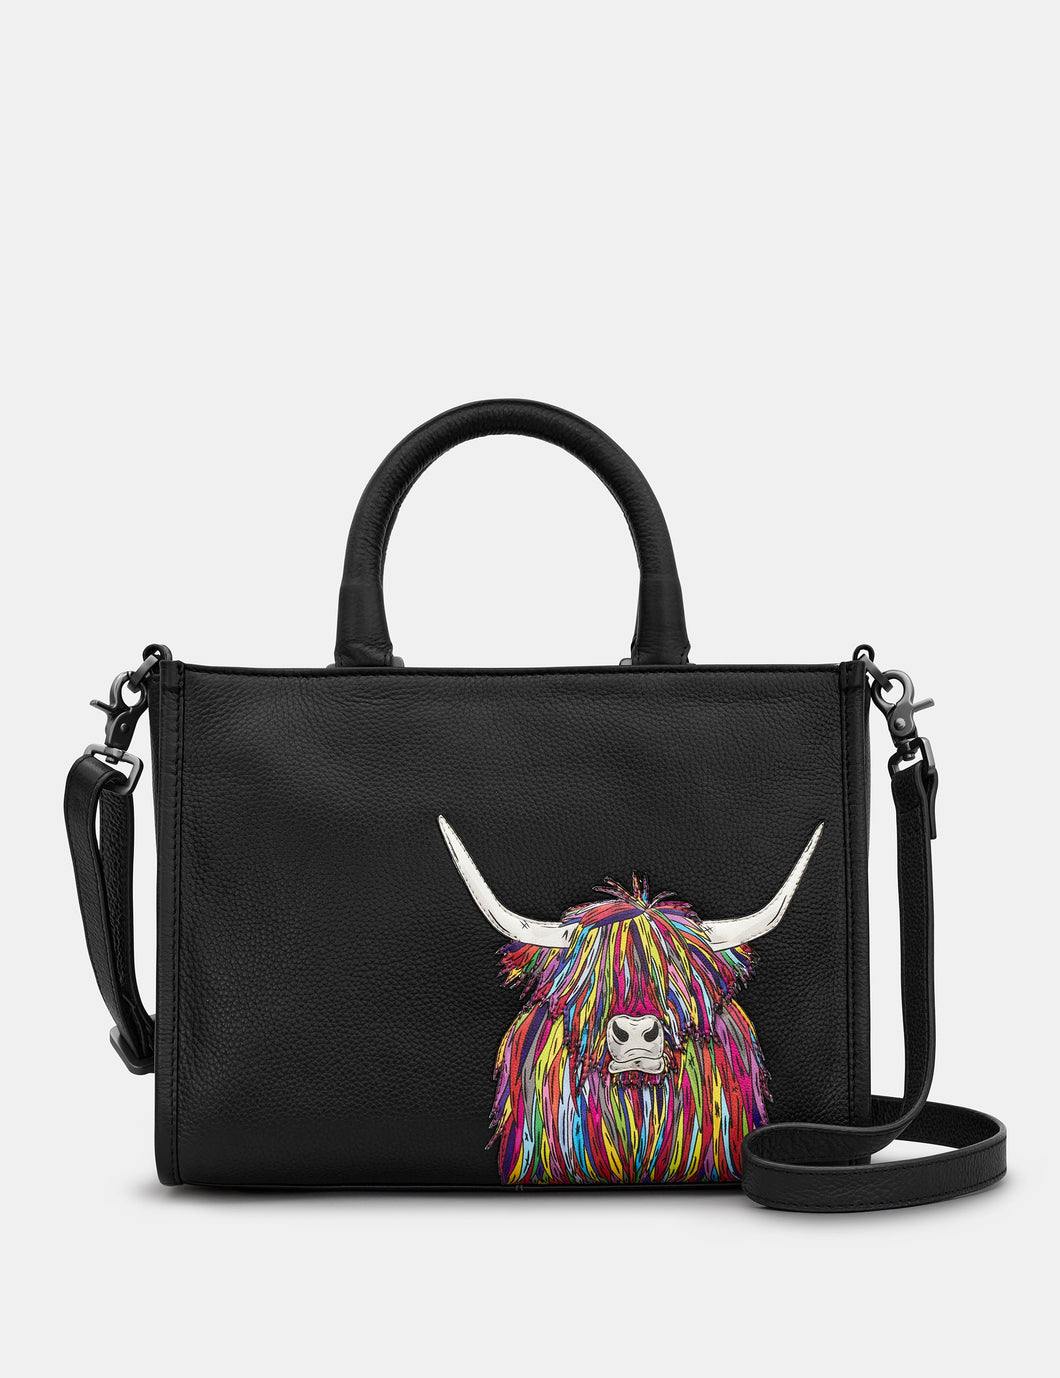 Yoshi YB230 COW 1 Black Rainbow Highland Cow Multiway Leather Grab Bag